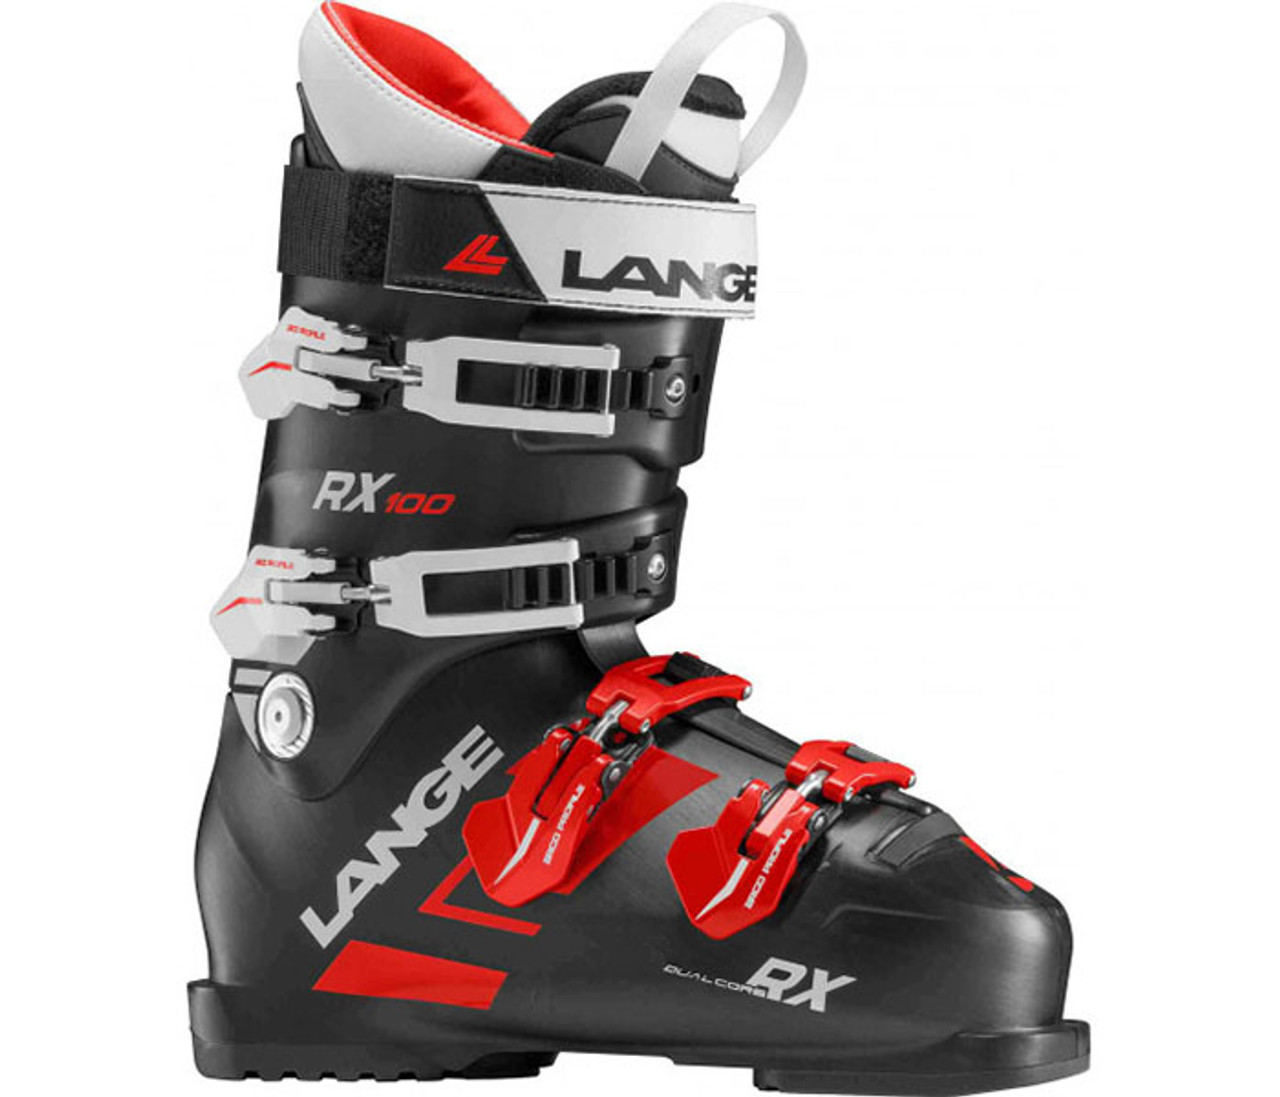 Lange RX 100 Ski Boots 2018 - Getboards Ride Shop